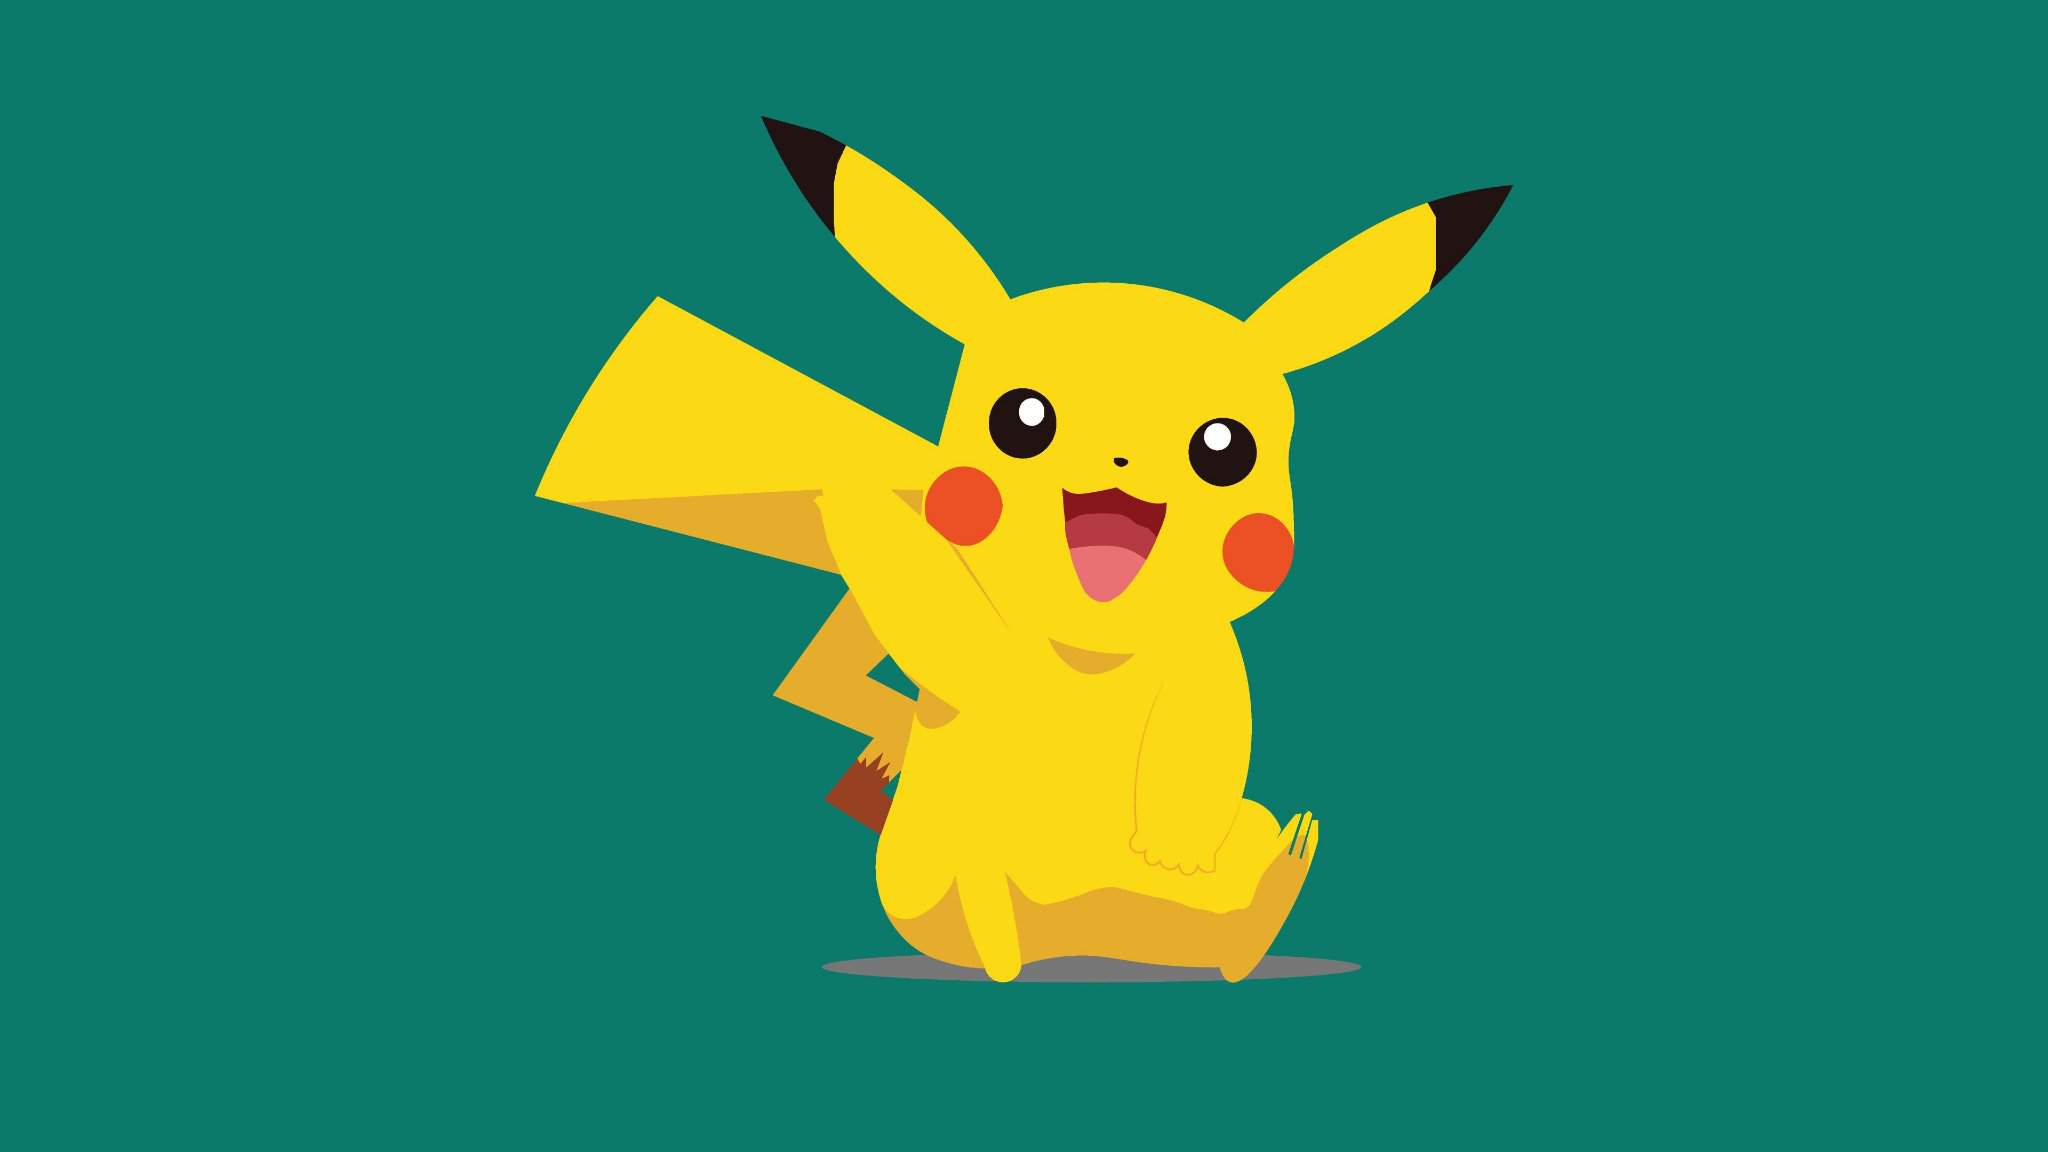 Bộ hình nền Pokemon, Pikachu cute cho máy tính - GameVui.vn